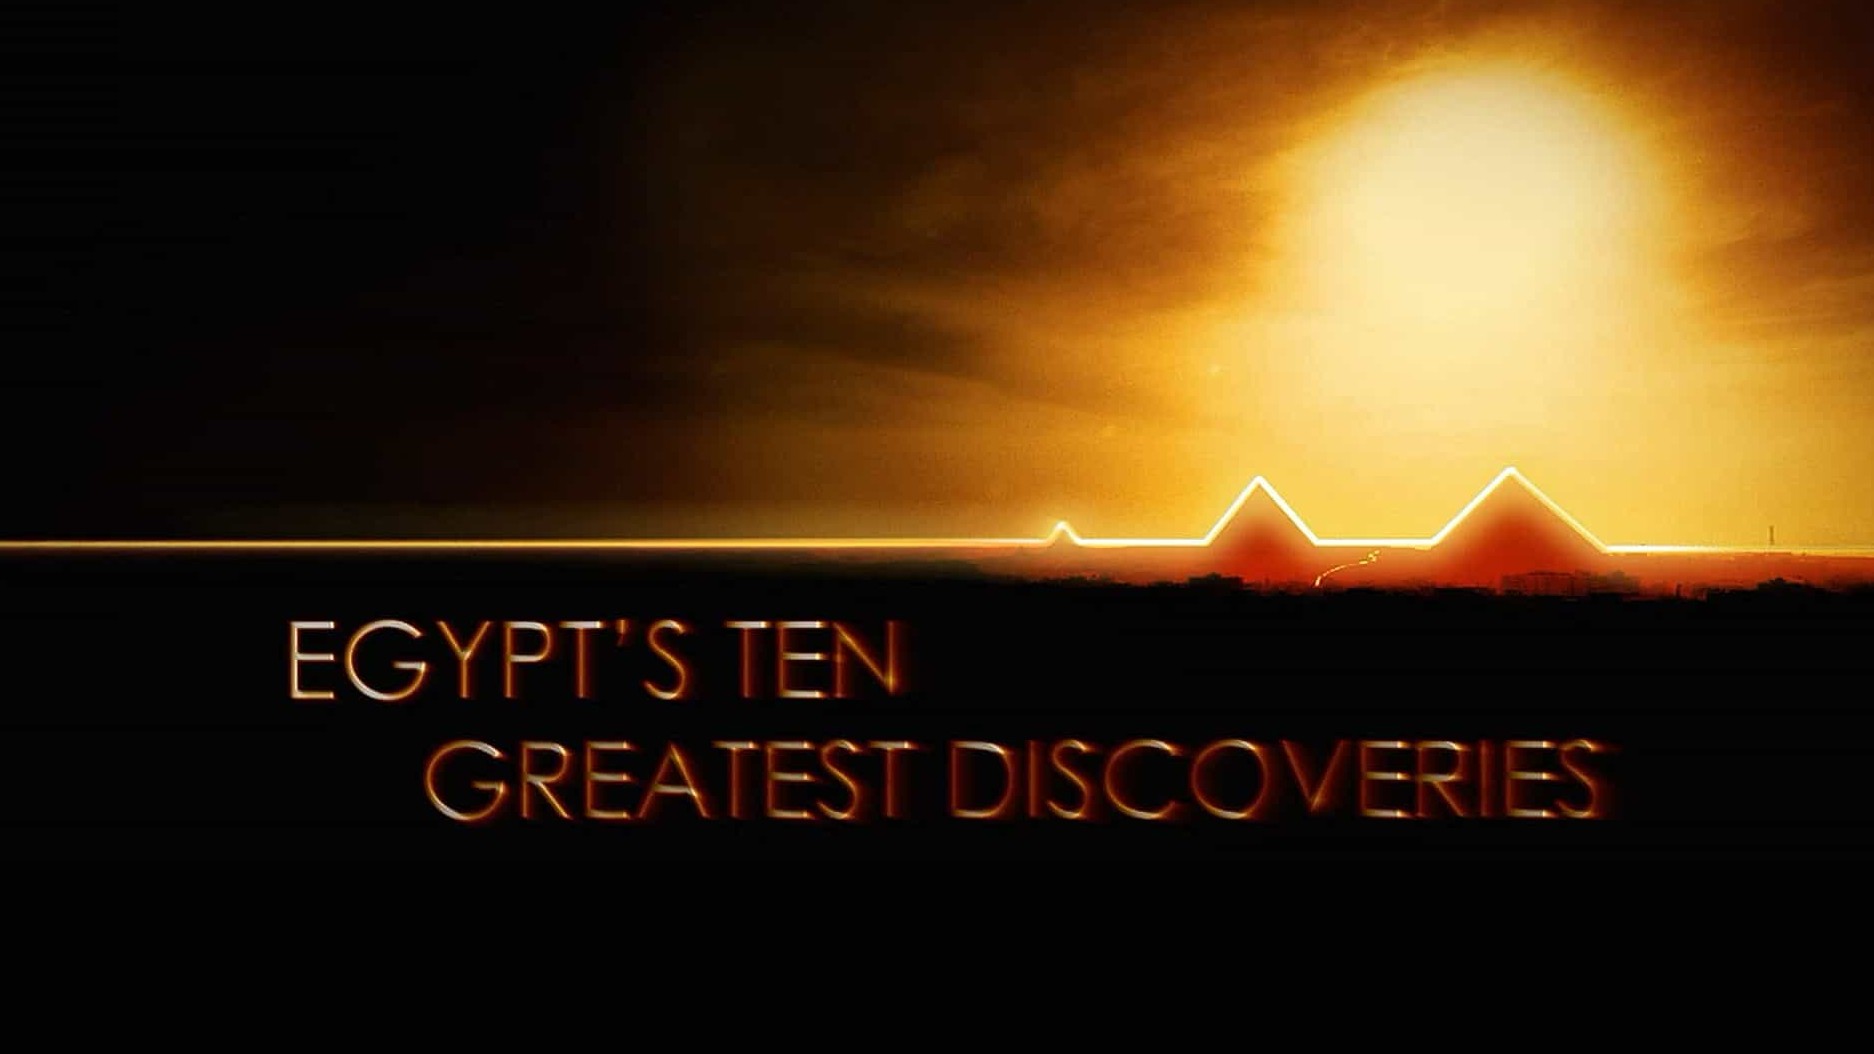 国家地理《古埃及十大发现 Egypt